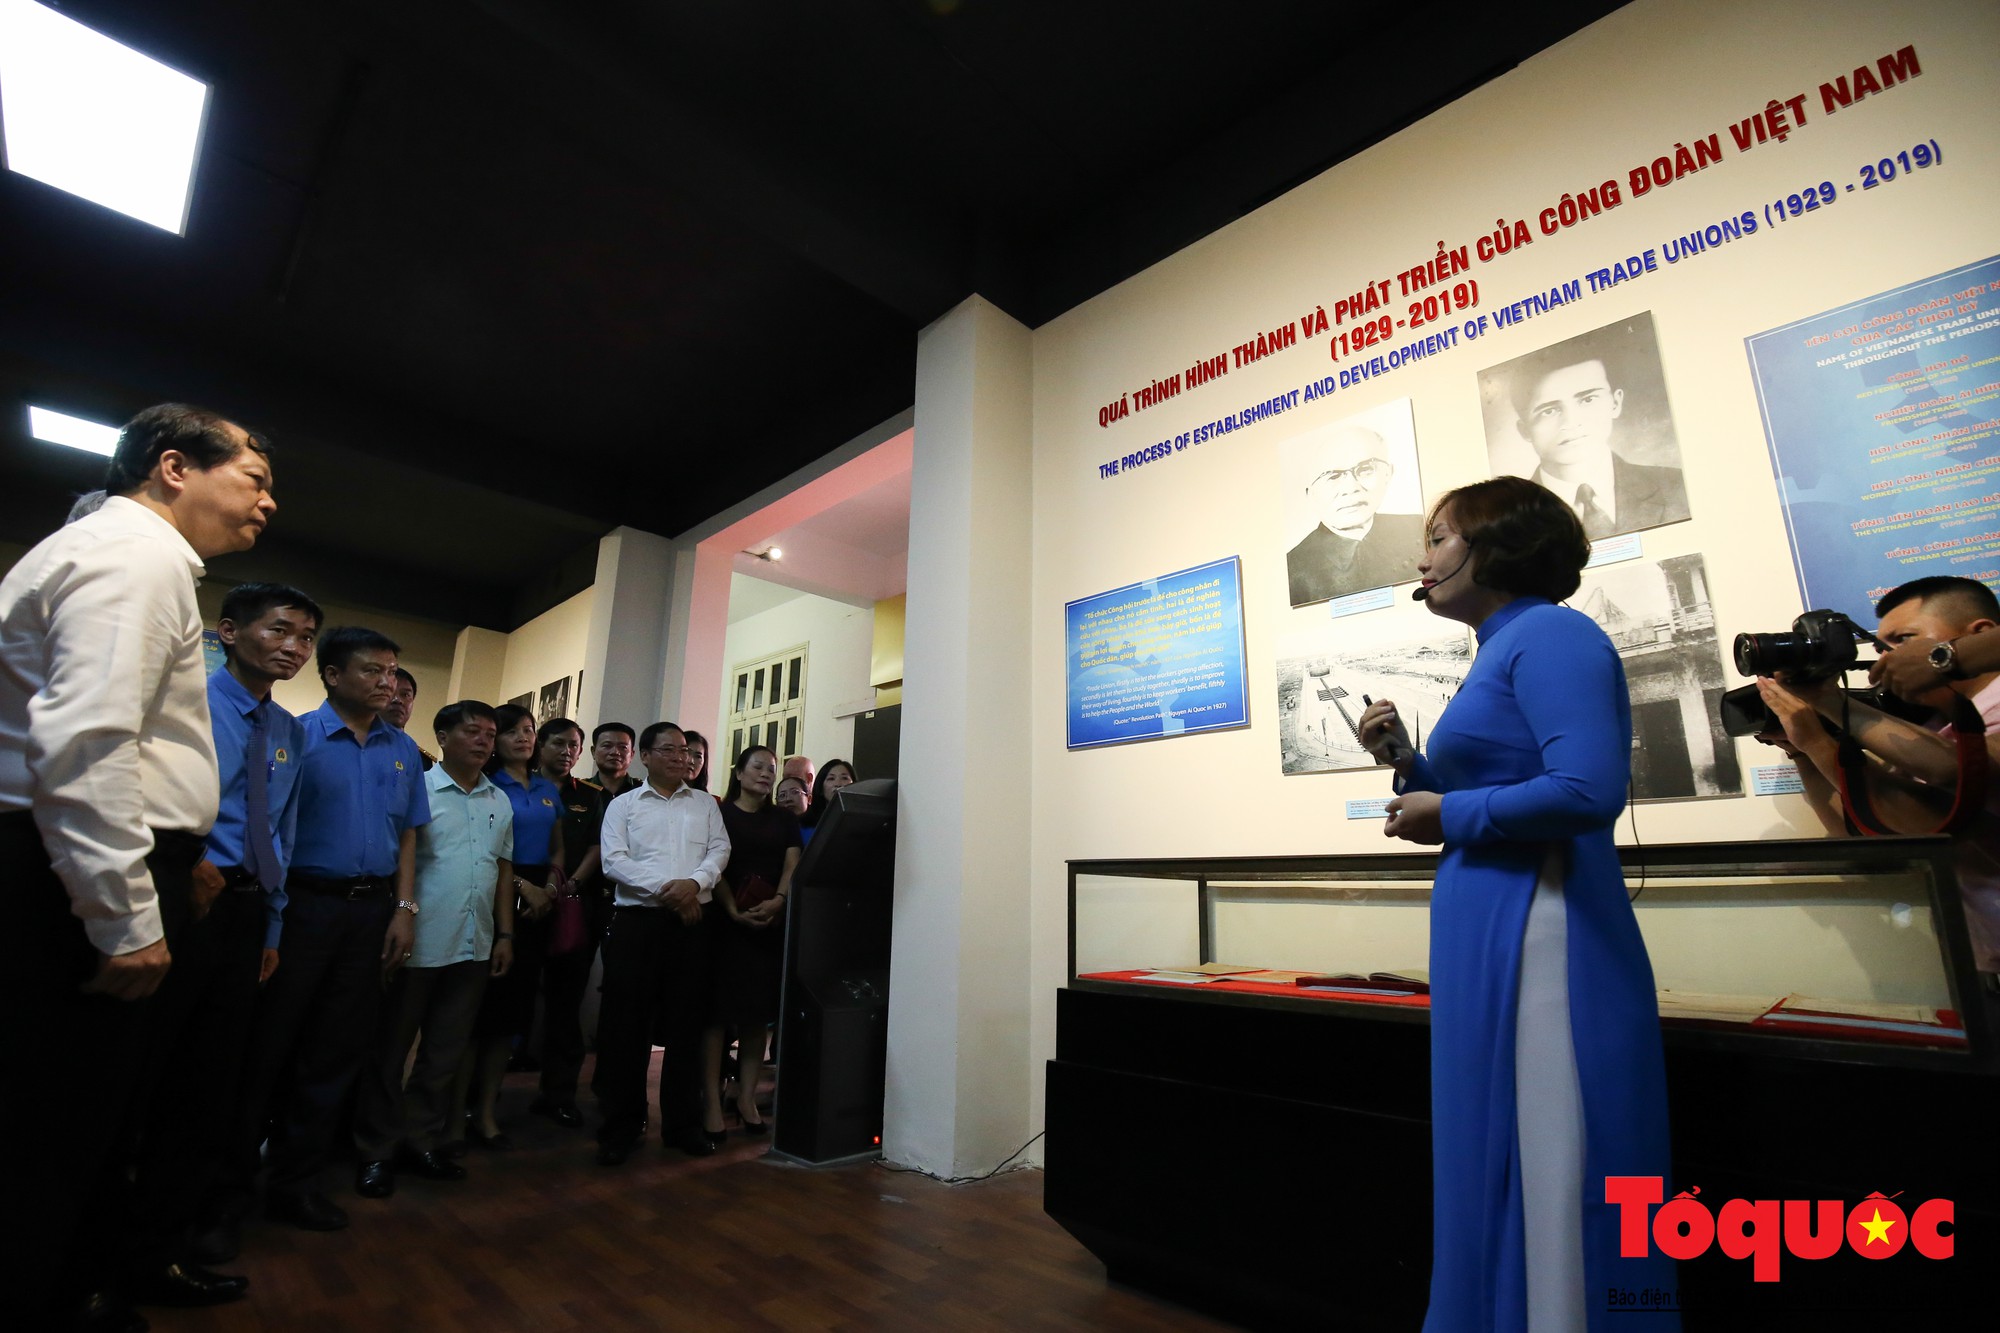 Trưng bày 300 hiện vật, hình ảnh tái hiện 90 năm xây dựng và phát triển Công đoàn Việt Nam (12)